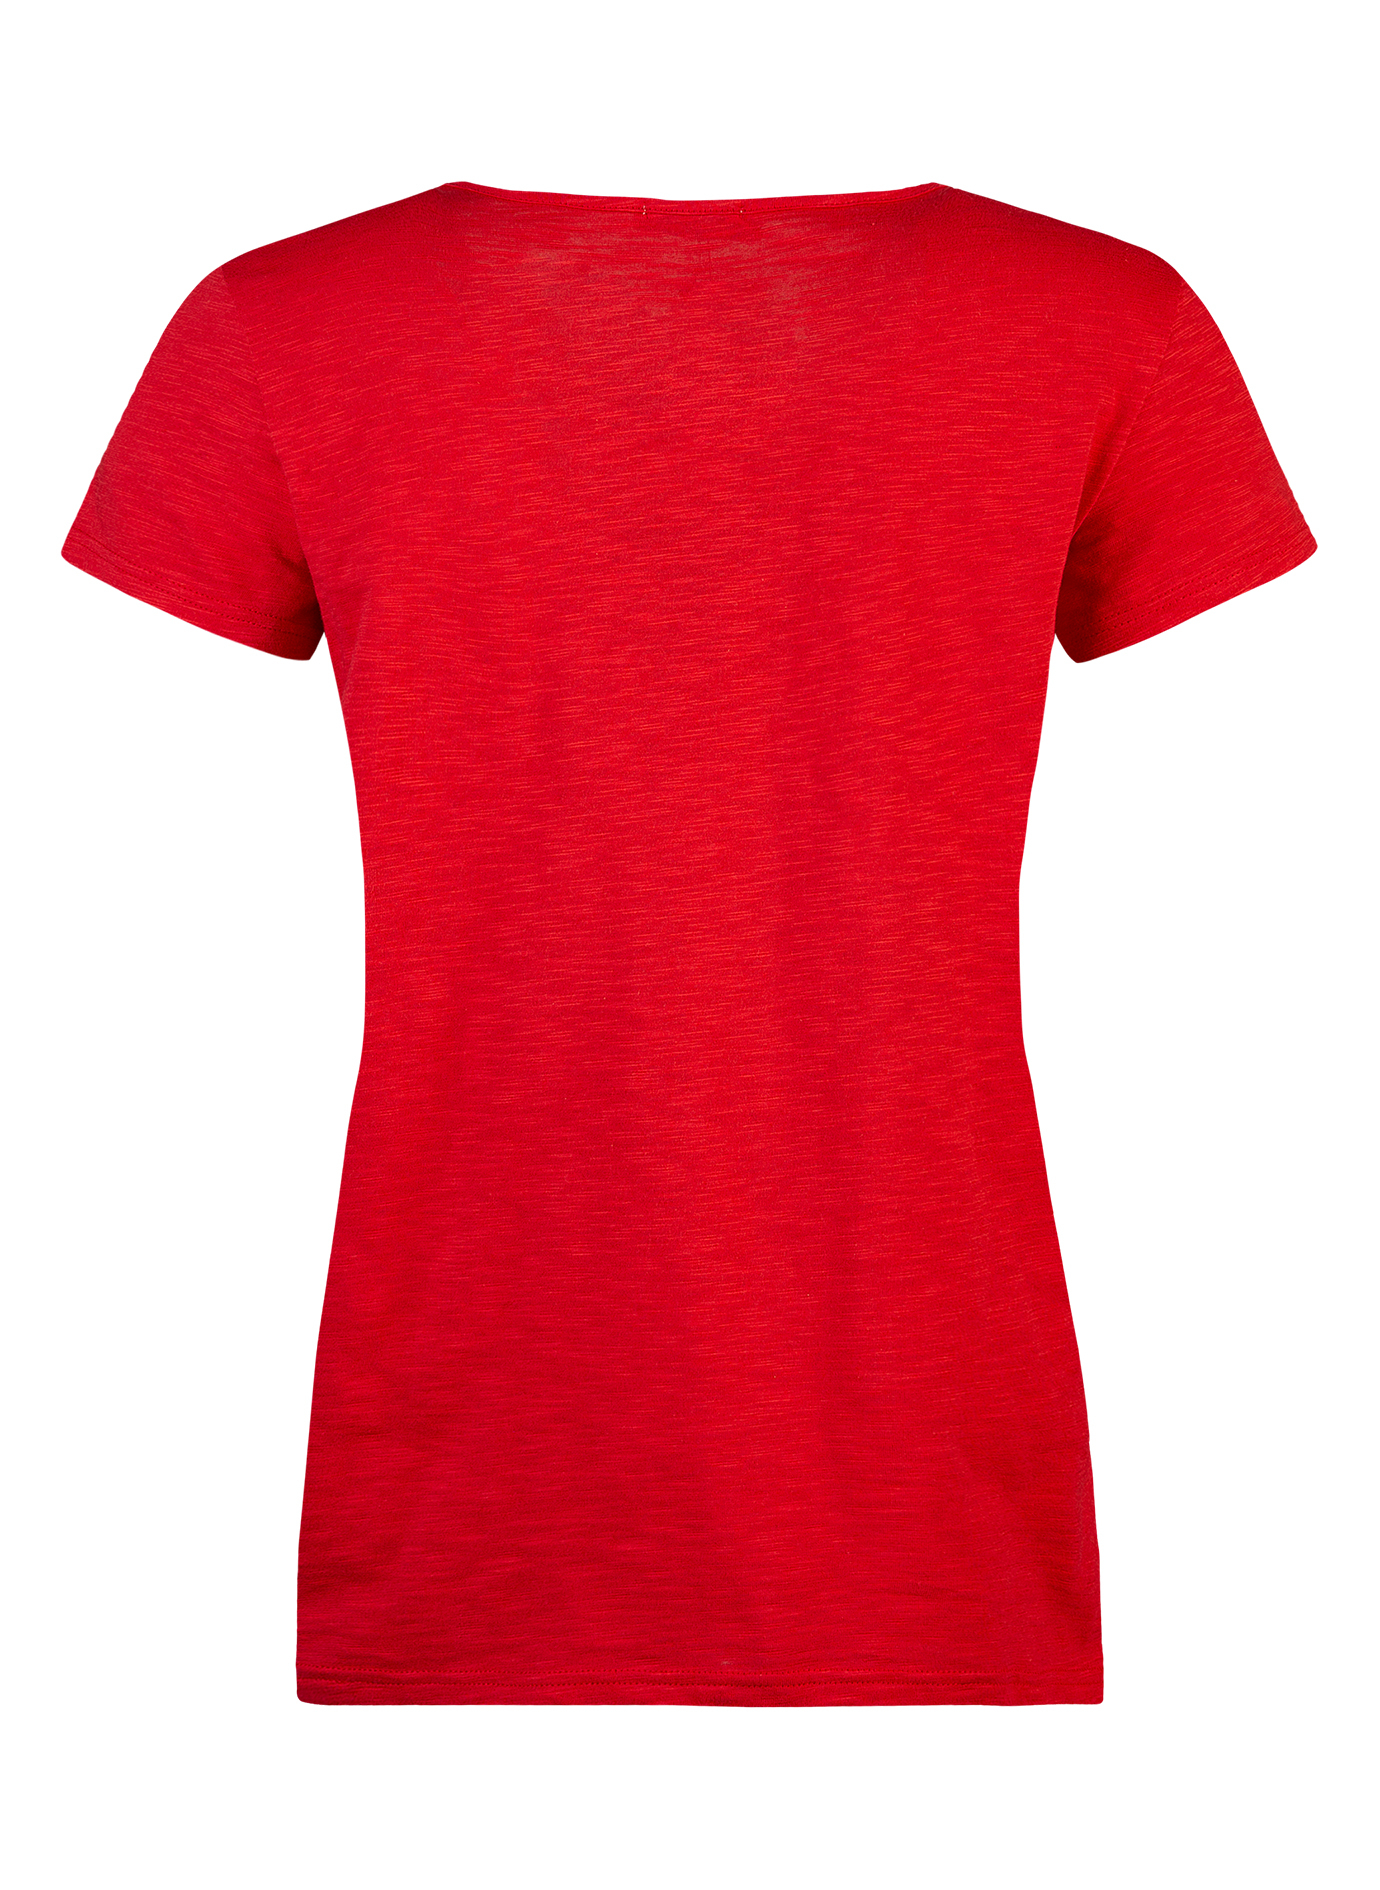 Damen T-Shirt Rot